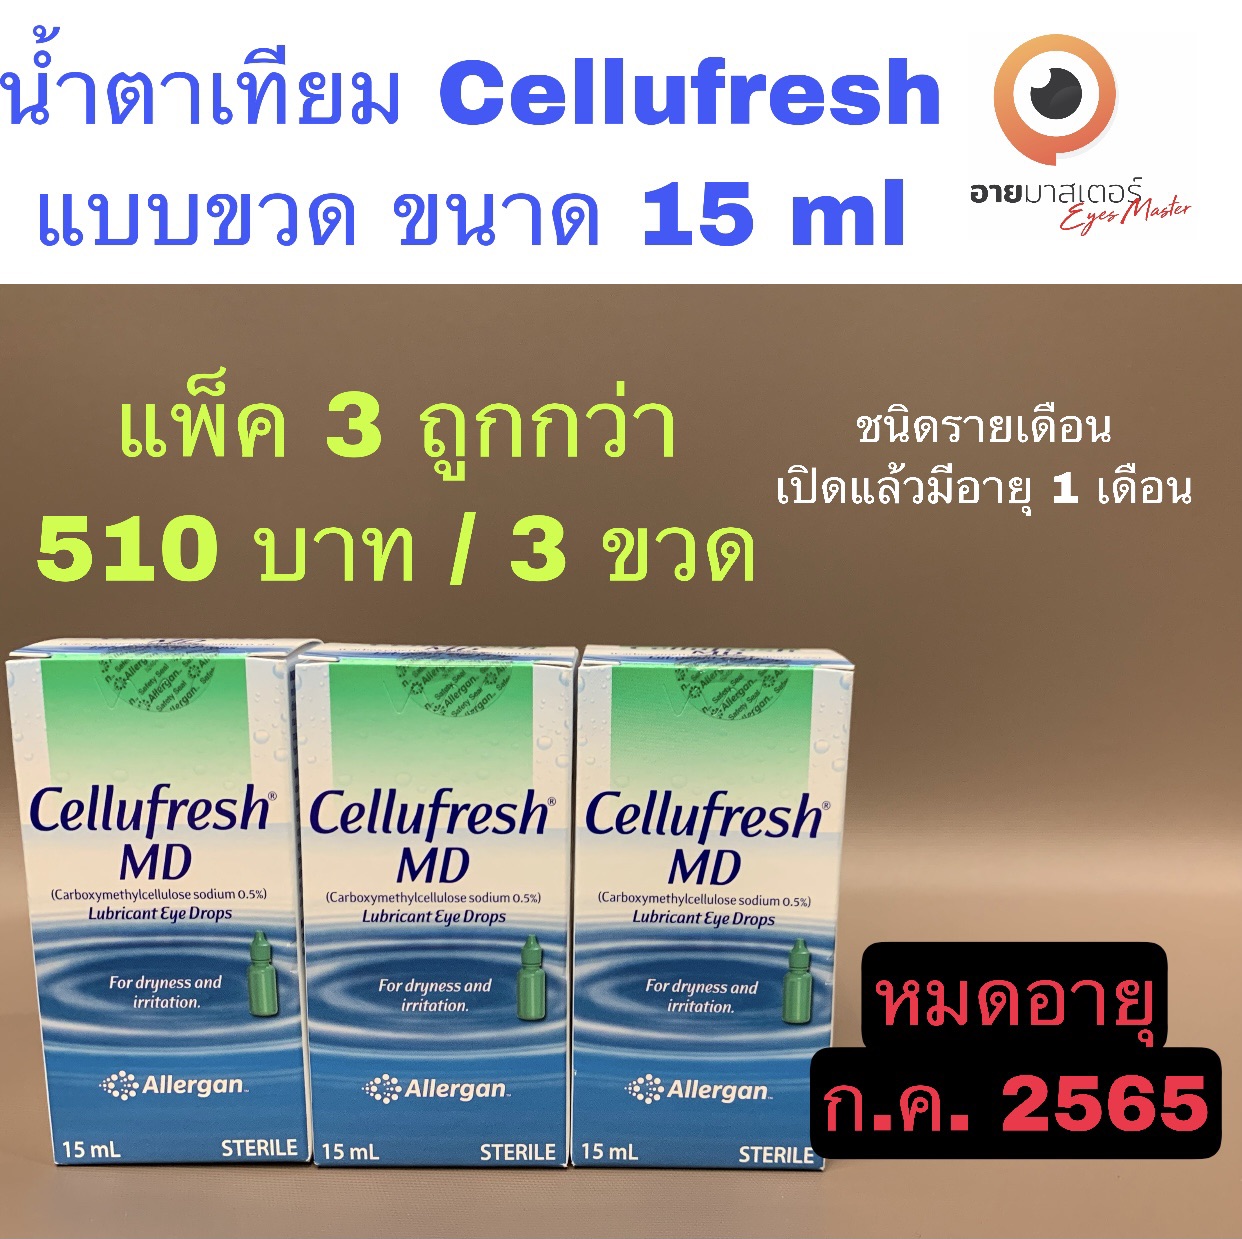 น้ำตาเทียม Cellufresh ชนิดรายเดือน แบบขวด ขนาด 15 ml (แพ็ค 3 ขวด)